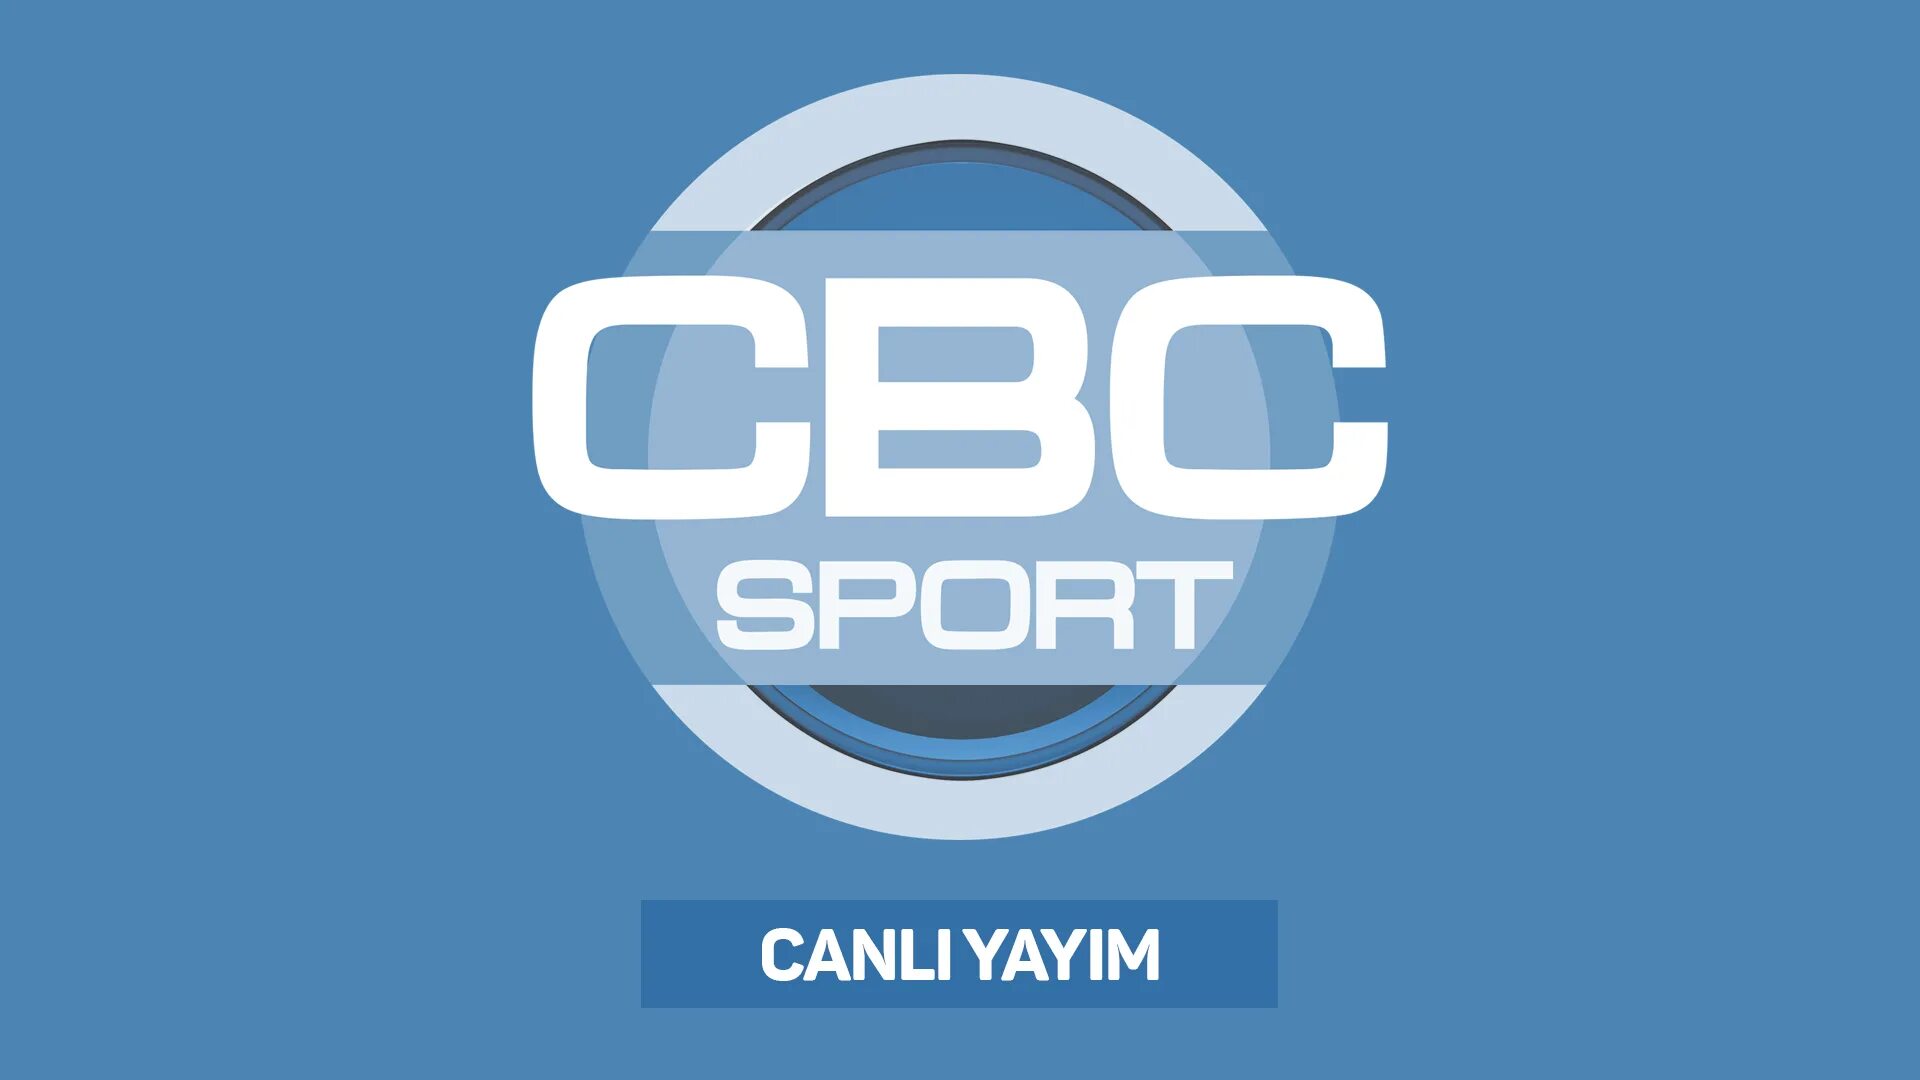 Cbc sport canli canlı izle. СВС спорт. СВС Sport Canli. Канал CBC Sport. CBC Sport Canli.